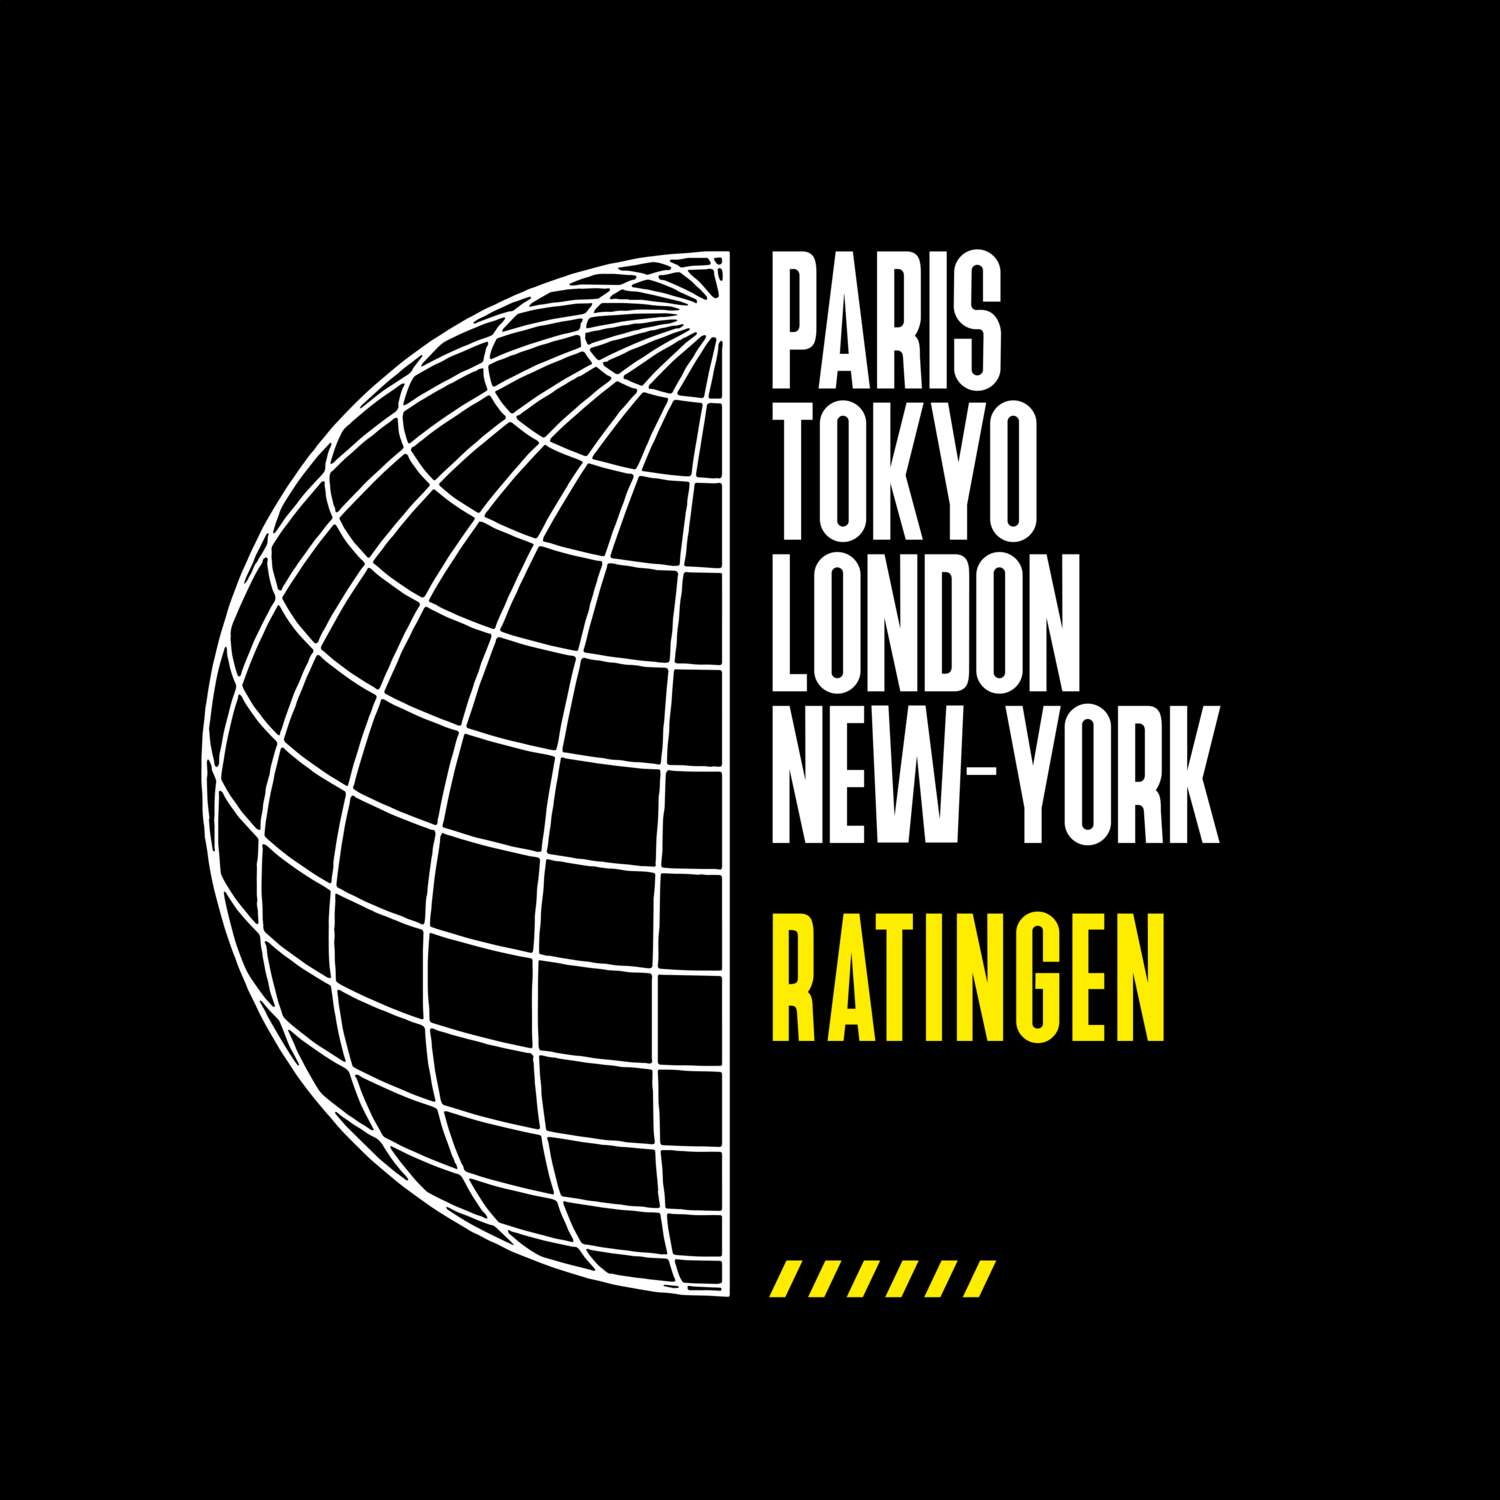 Ratingen T-Shirt »Paris Tokyo London«